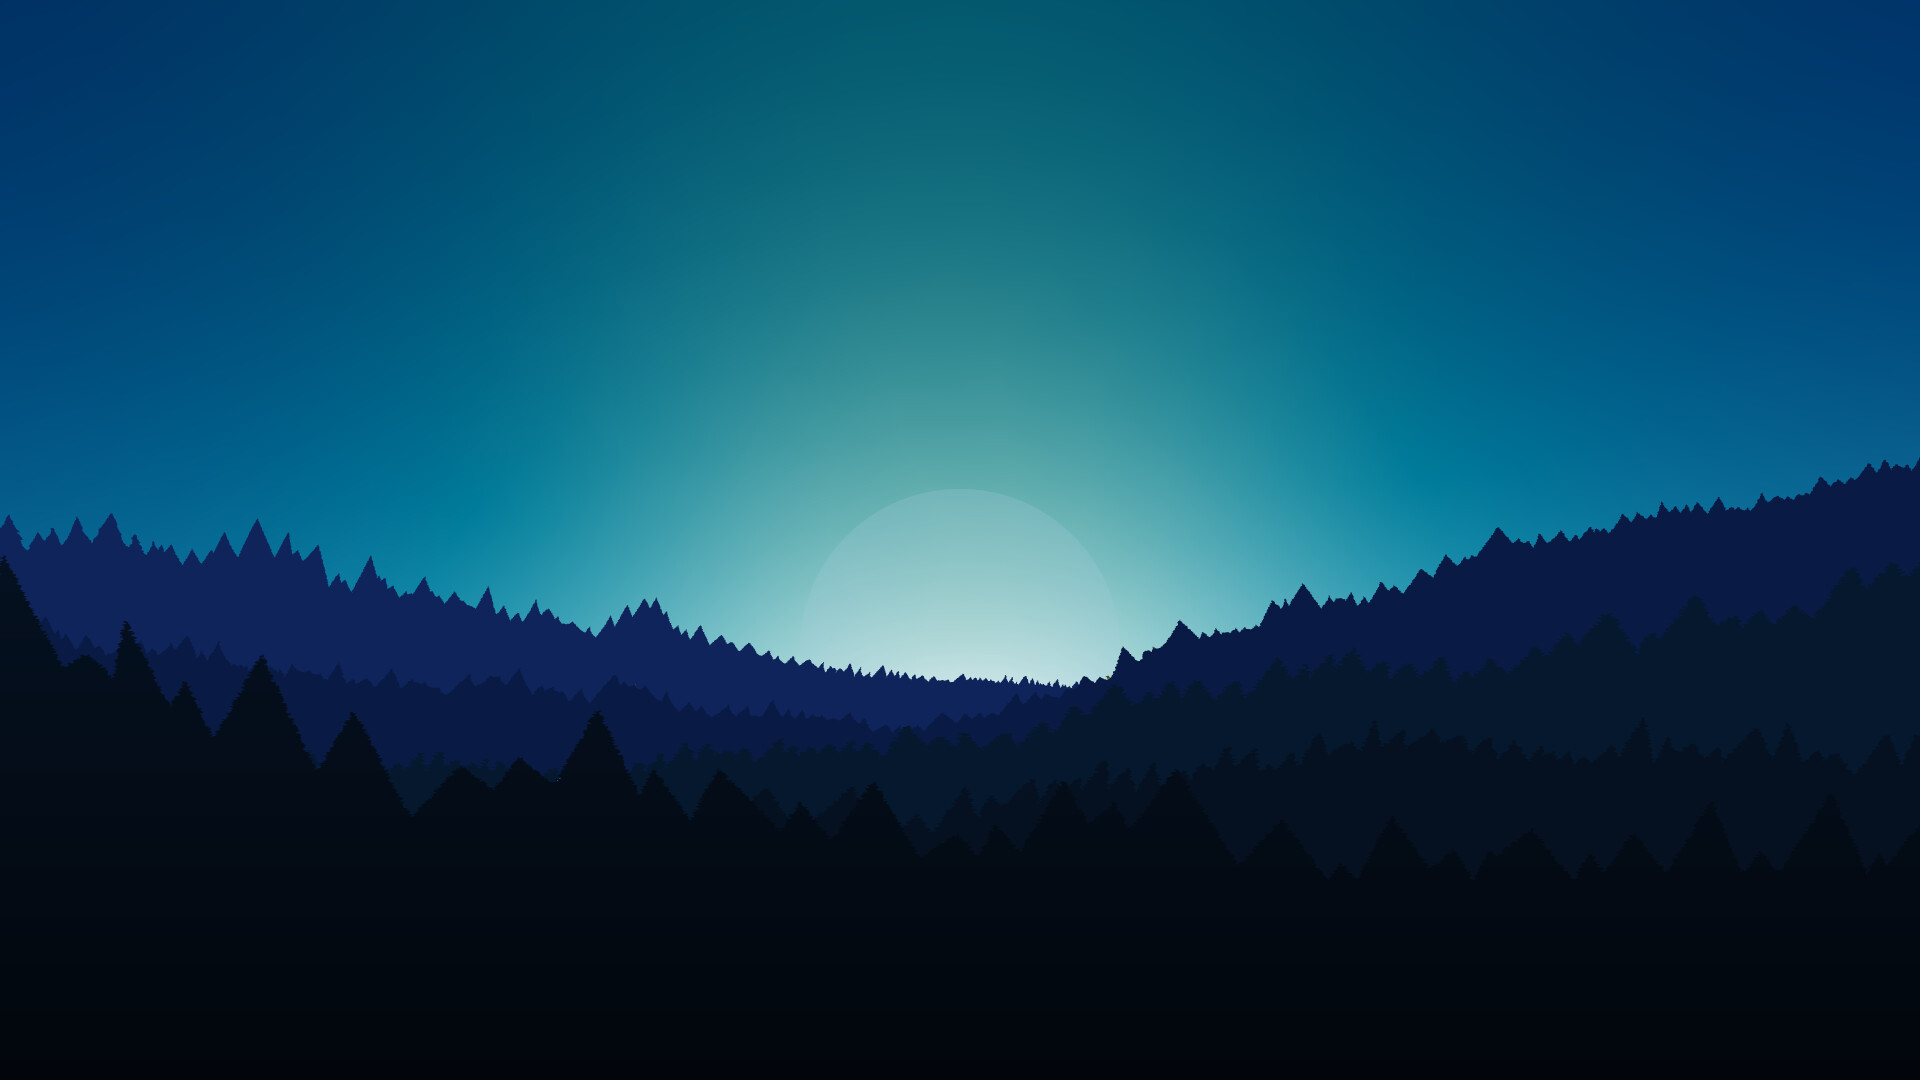 ArtStation cung cấp hình nền rừng đêm tối giản và đẹp nhất để bạn trang trí cho máy tính cá nhân của mình. Hình ảnh chất lượng cao sẽ đưa bạn đến trong khu rừng đêm tối một cách thú vị. Hãy thưởng thức hình ảnh này để cảm nhận tuyệt vời từ thiên nhiên. 